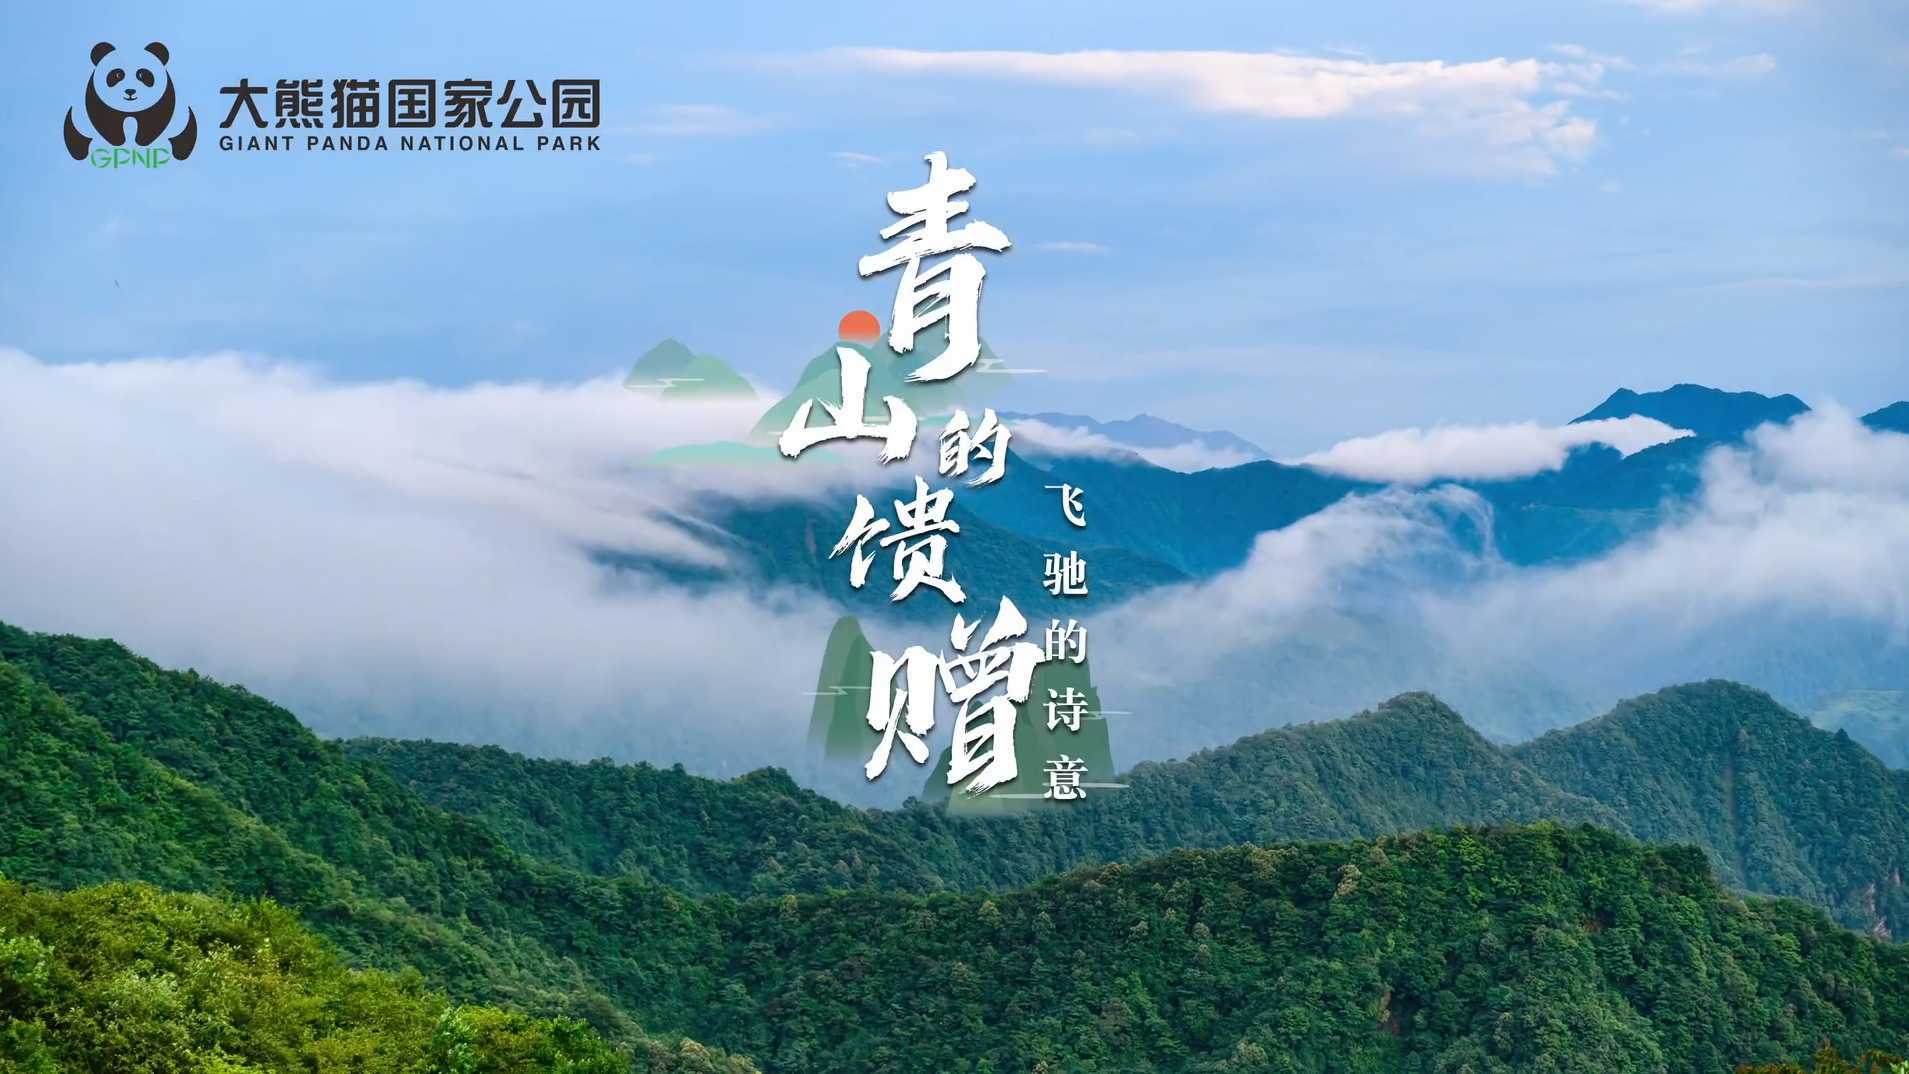 《青山的馈赠飞驰的诗意》大熊猫国家公园生态产品宣传片